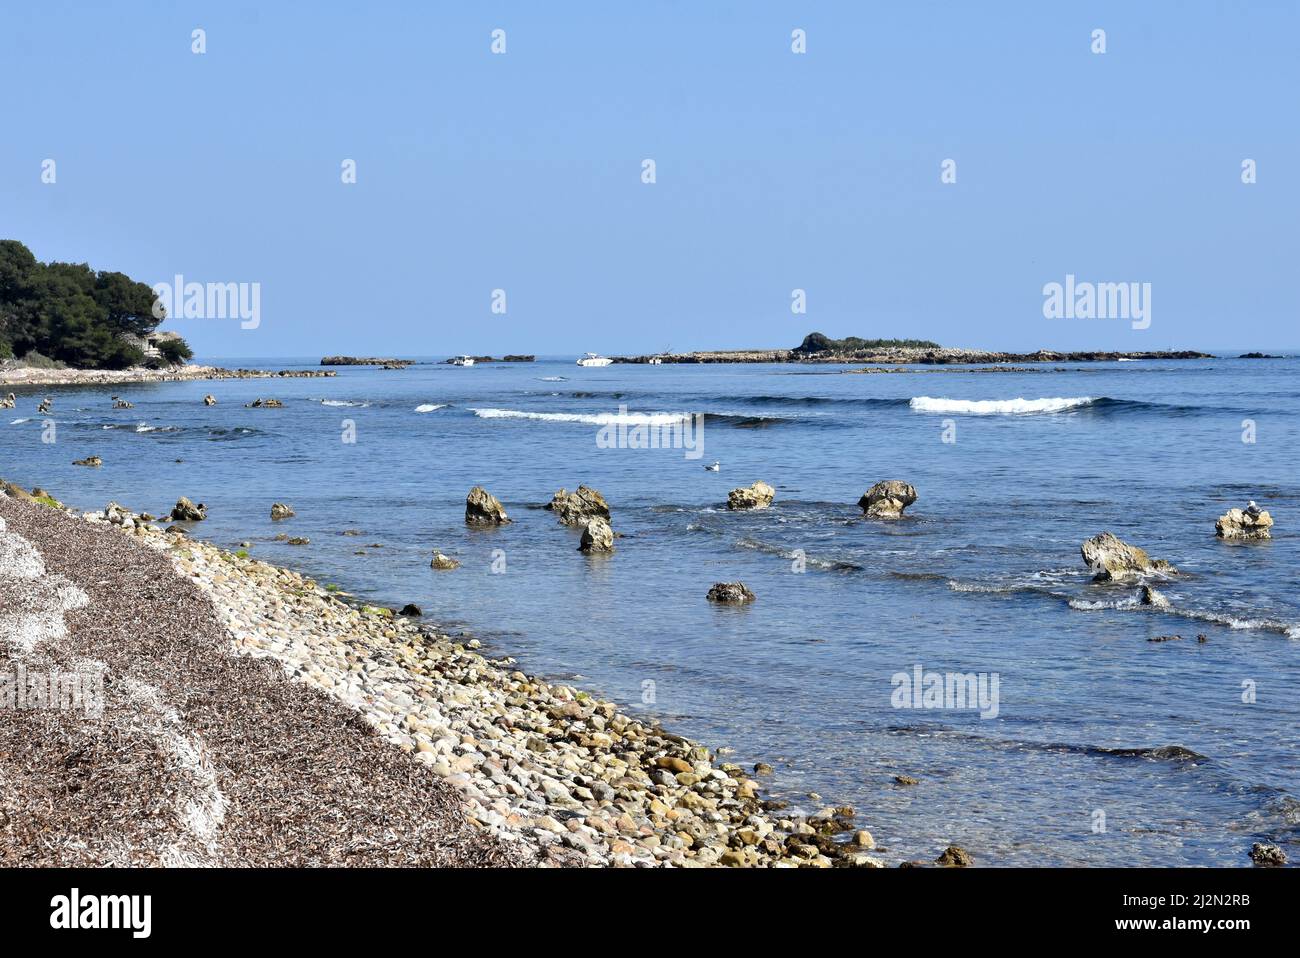 Francia, costa azzurra, l'isolotto di Saint Ferréol a est dell'isola di Saint Honorat nella baia di cannes nel mediterraneo. Foto Stock